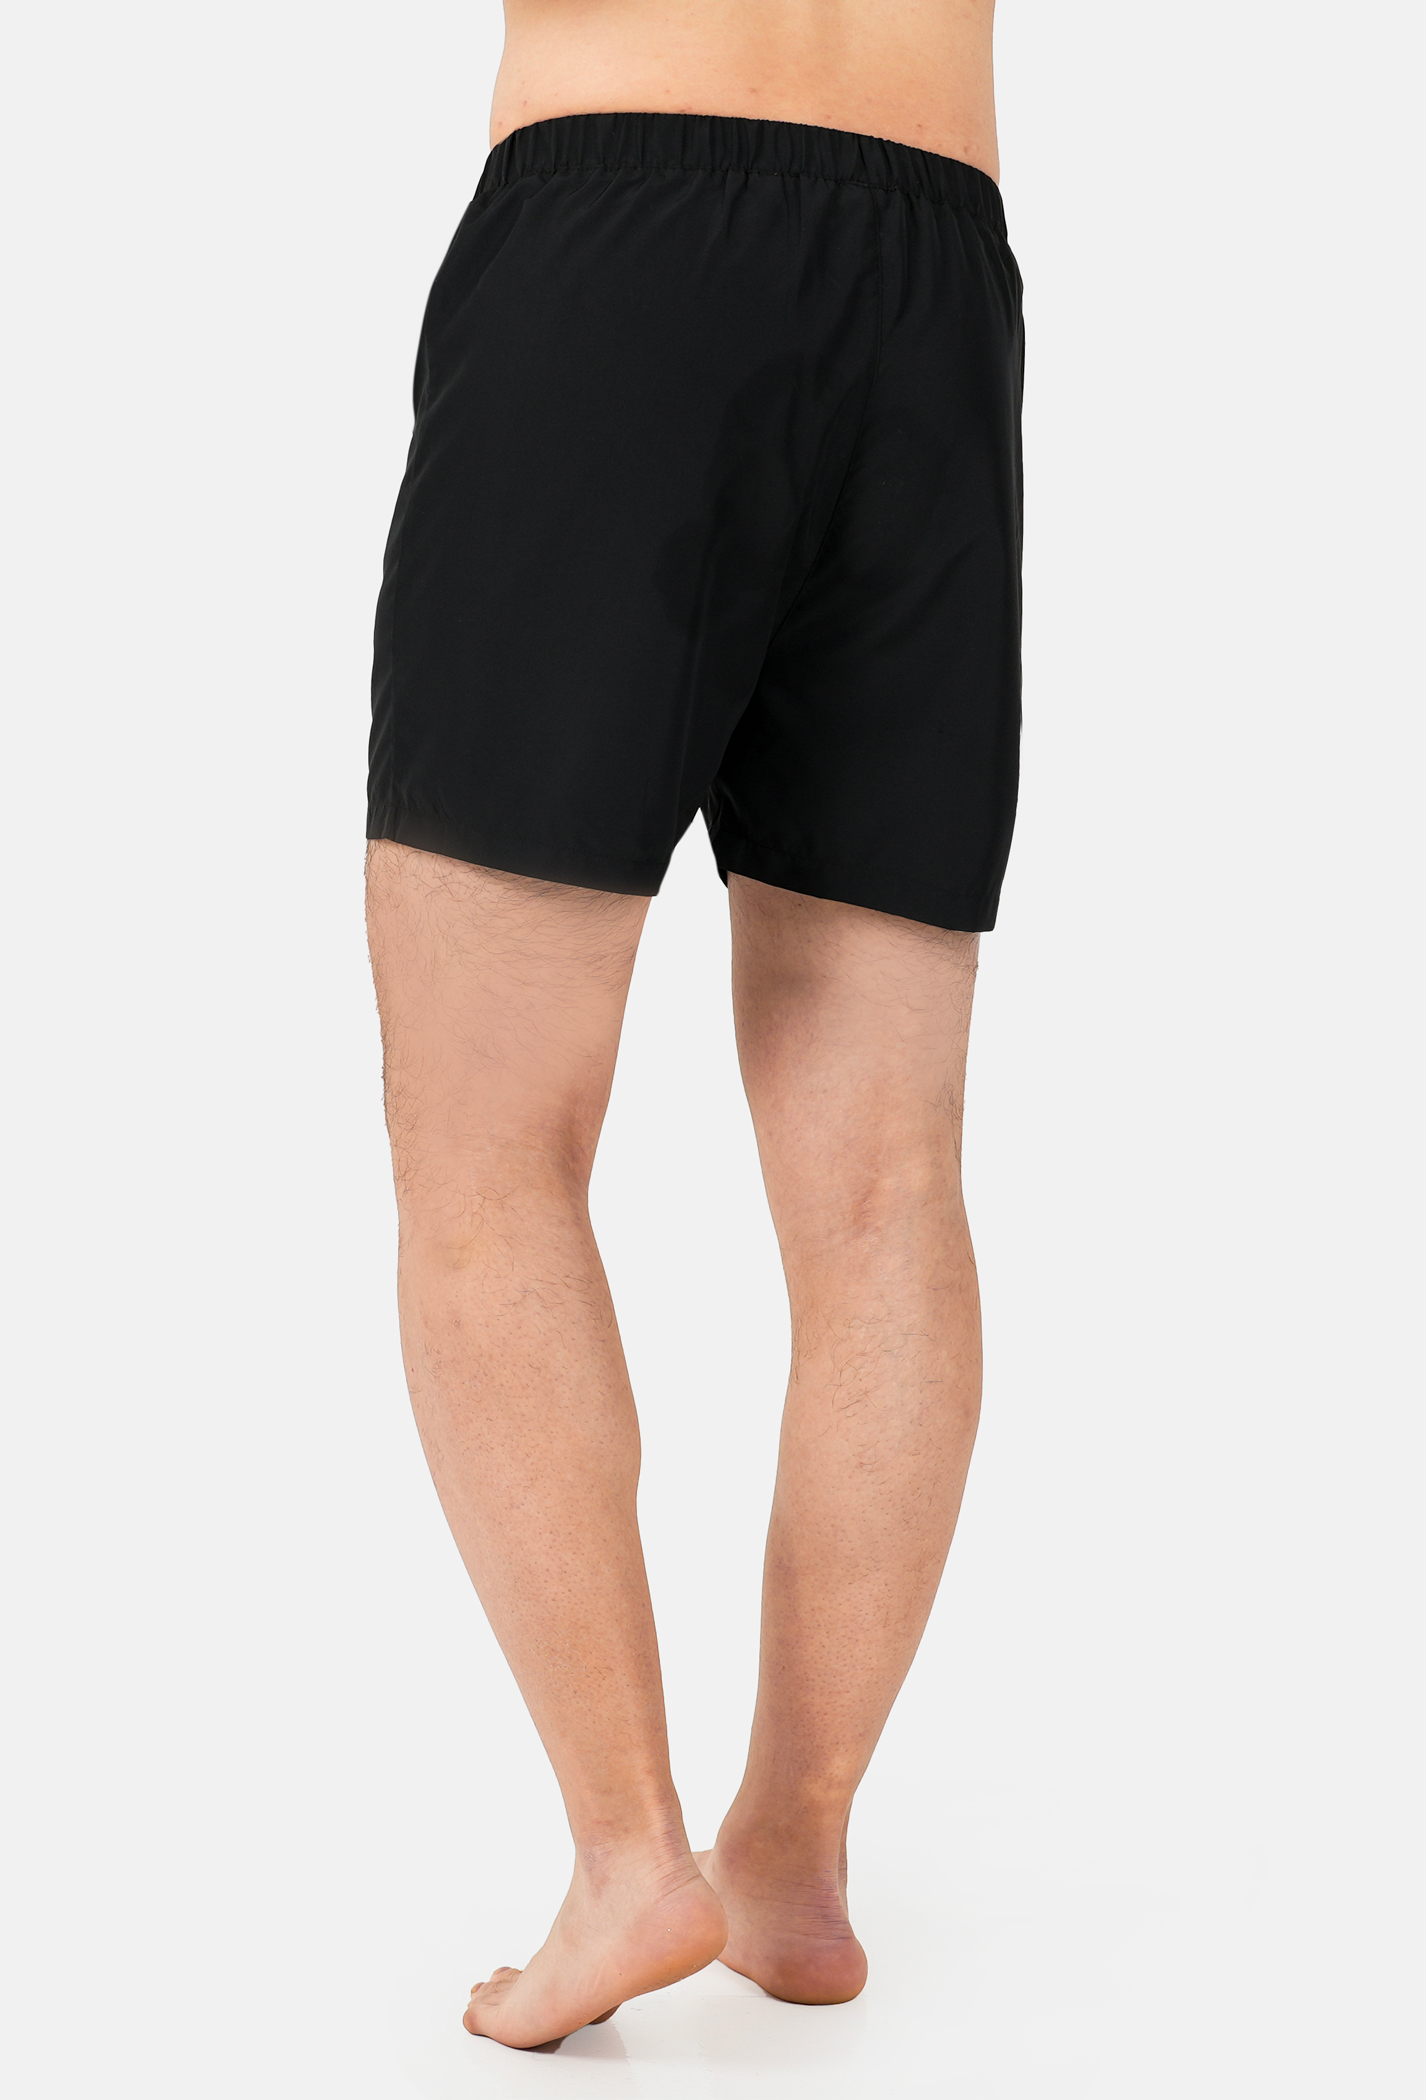 Quần Shorts mặc nhà Coolmate Basics Đen 3